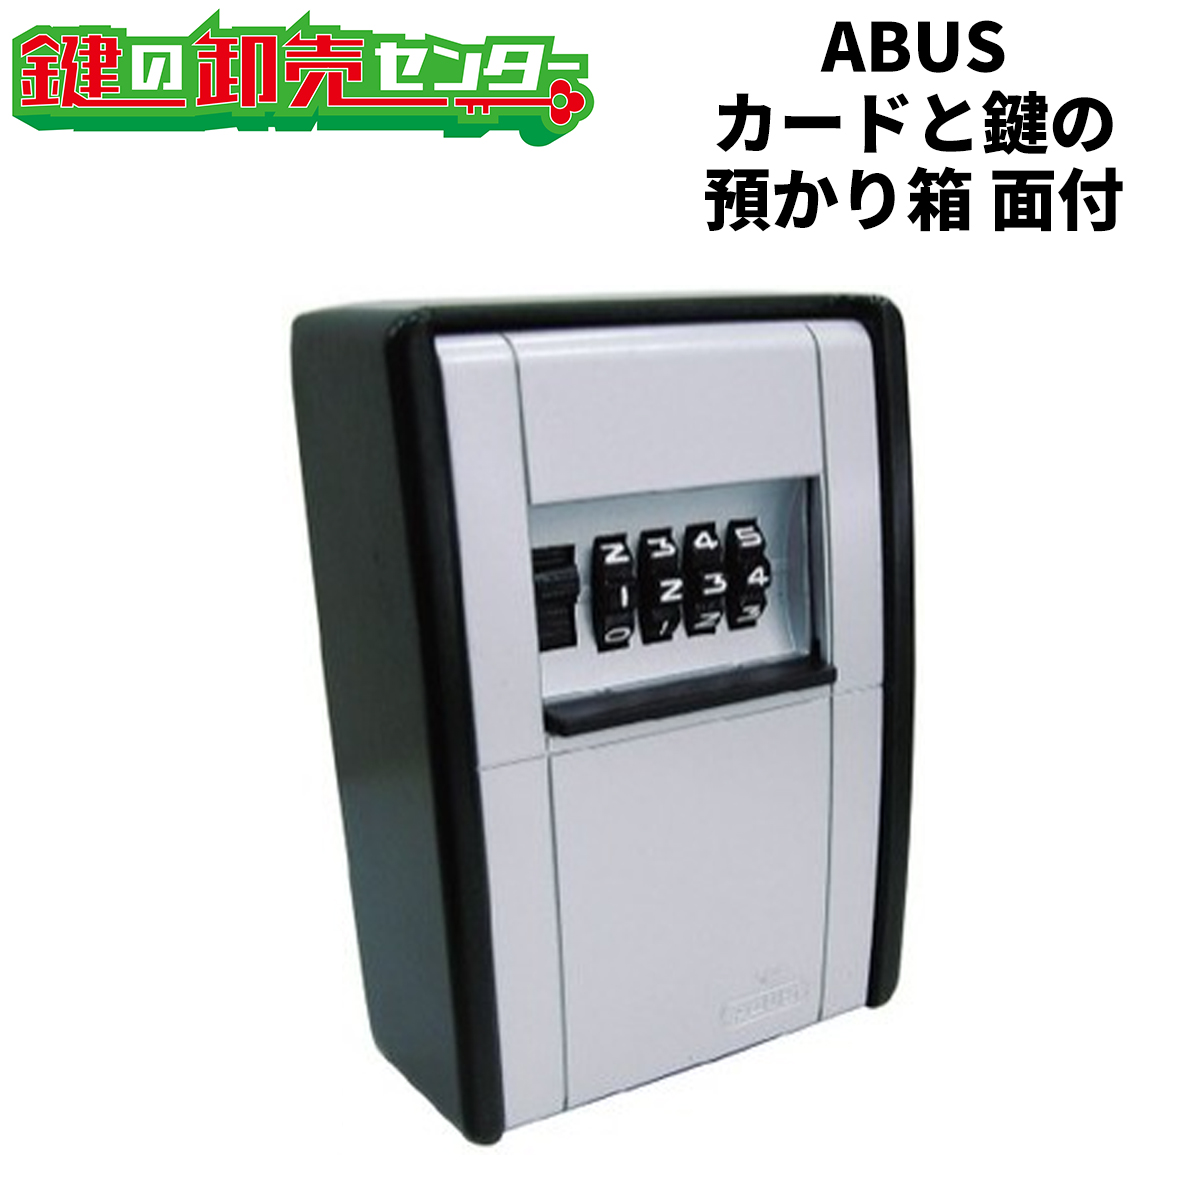 ABUS アバス カードとカギの預かり箱 面付 [AB-KG2-B] ○面付タイプ